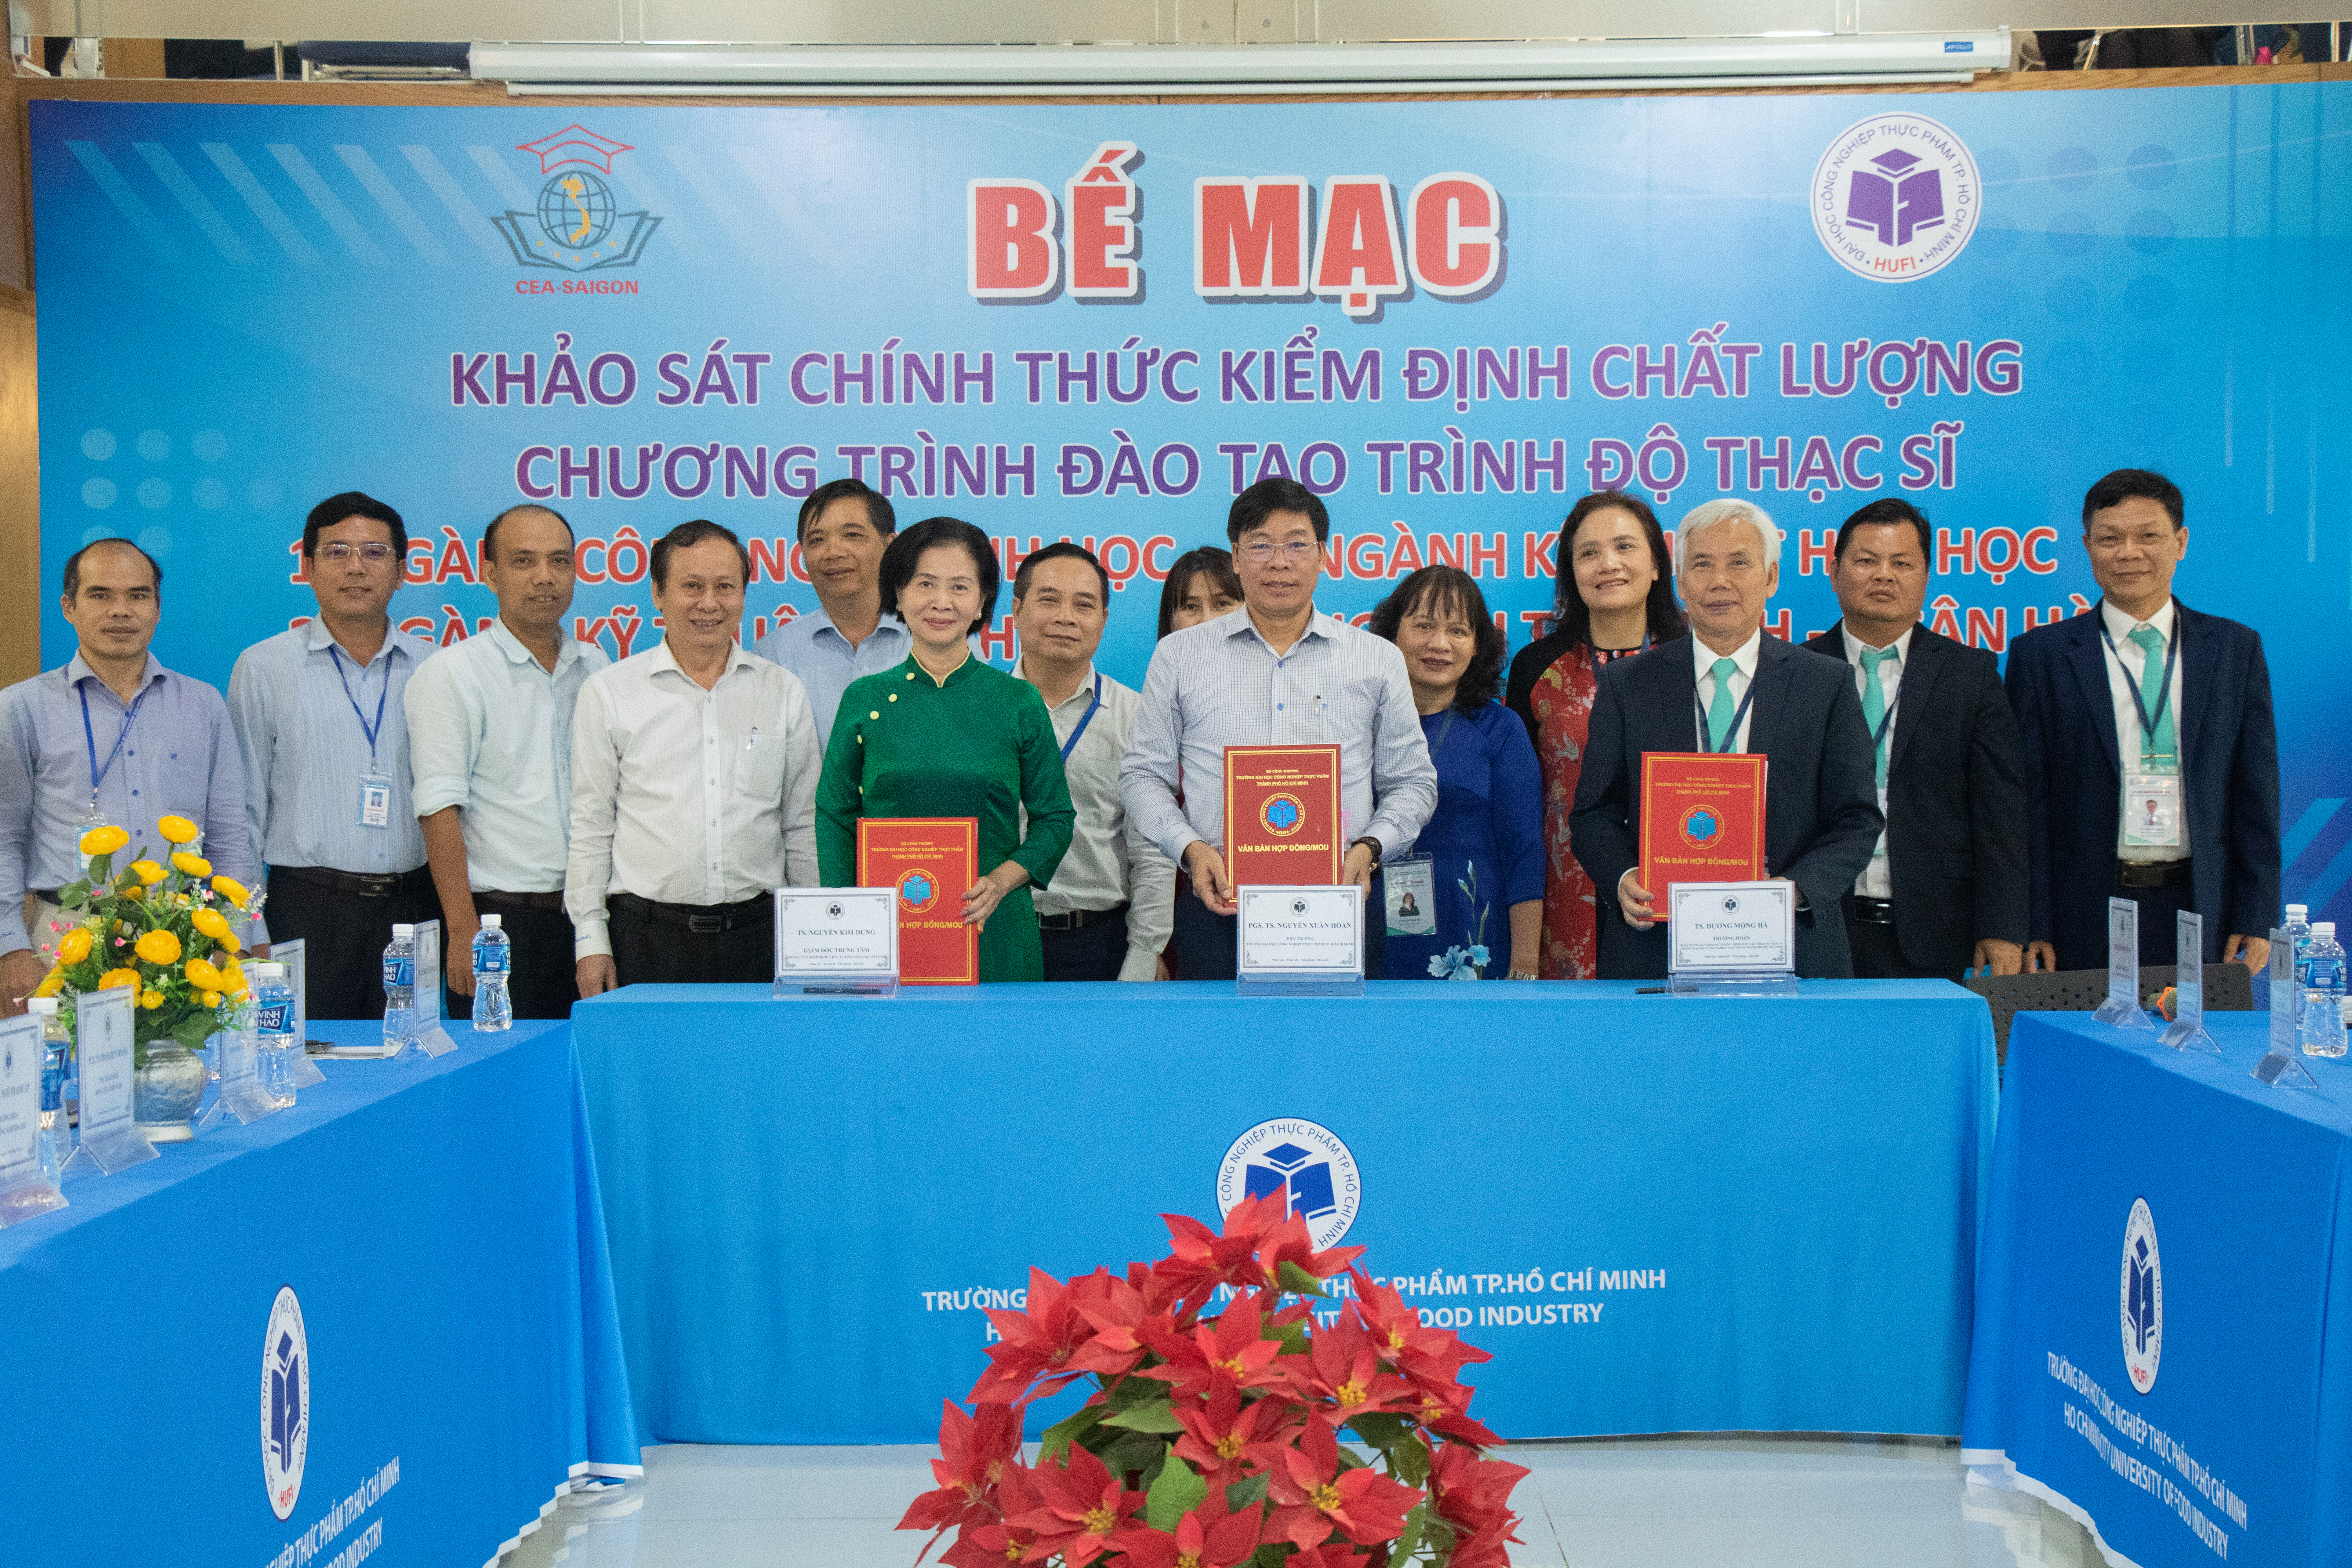 Bế mạc Khảo sát chính thức 04 chương trình đào tạo trình độ thạc sĩ của Trường Đại học Công nghiệp Thực phẩm Thành phố Hồ Chí Minh